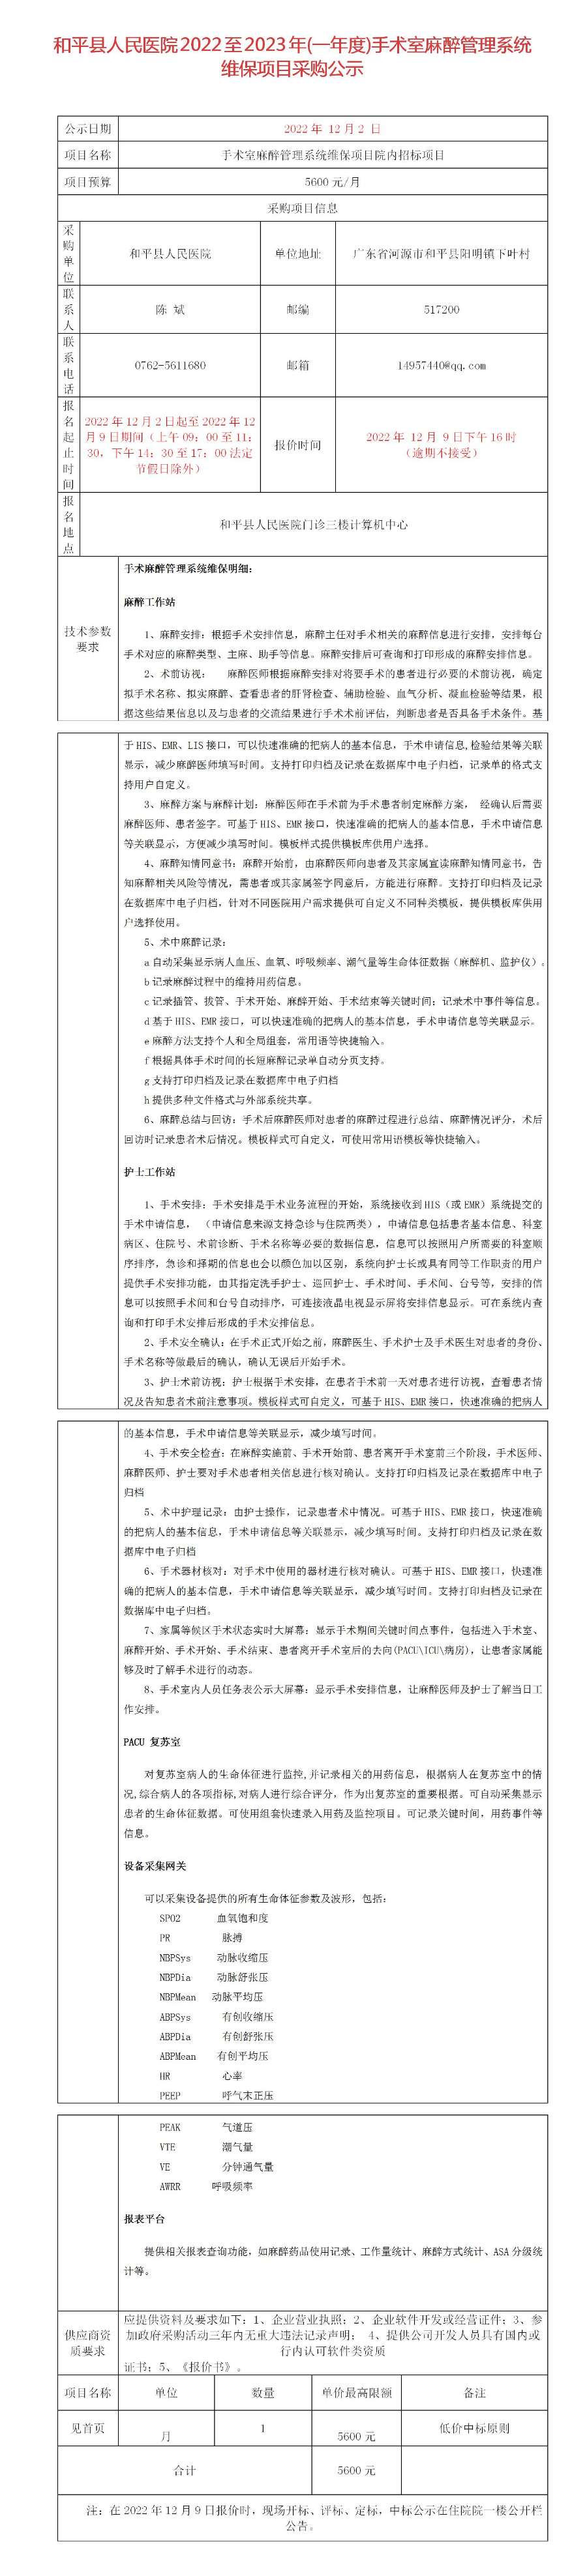 和平县人民医院2022至2023年(一年度)手术室麻醉管理系统维保项目采购公示_01.jpg